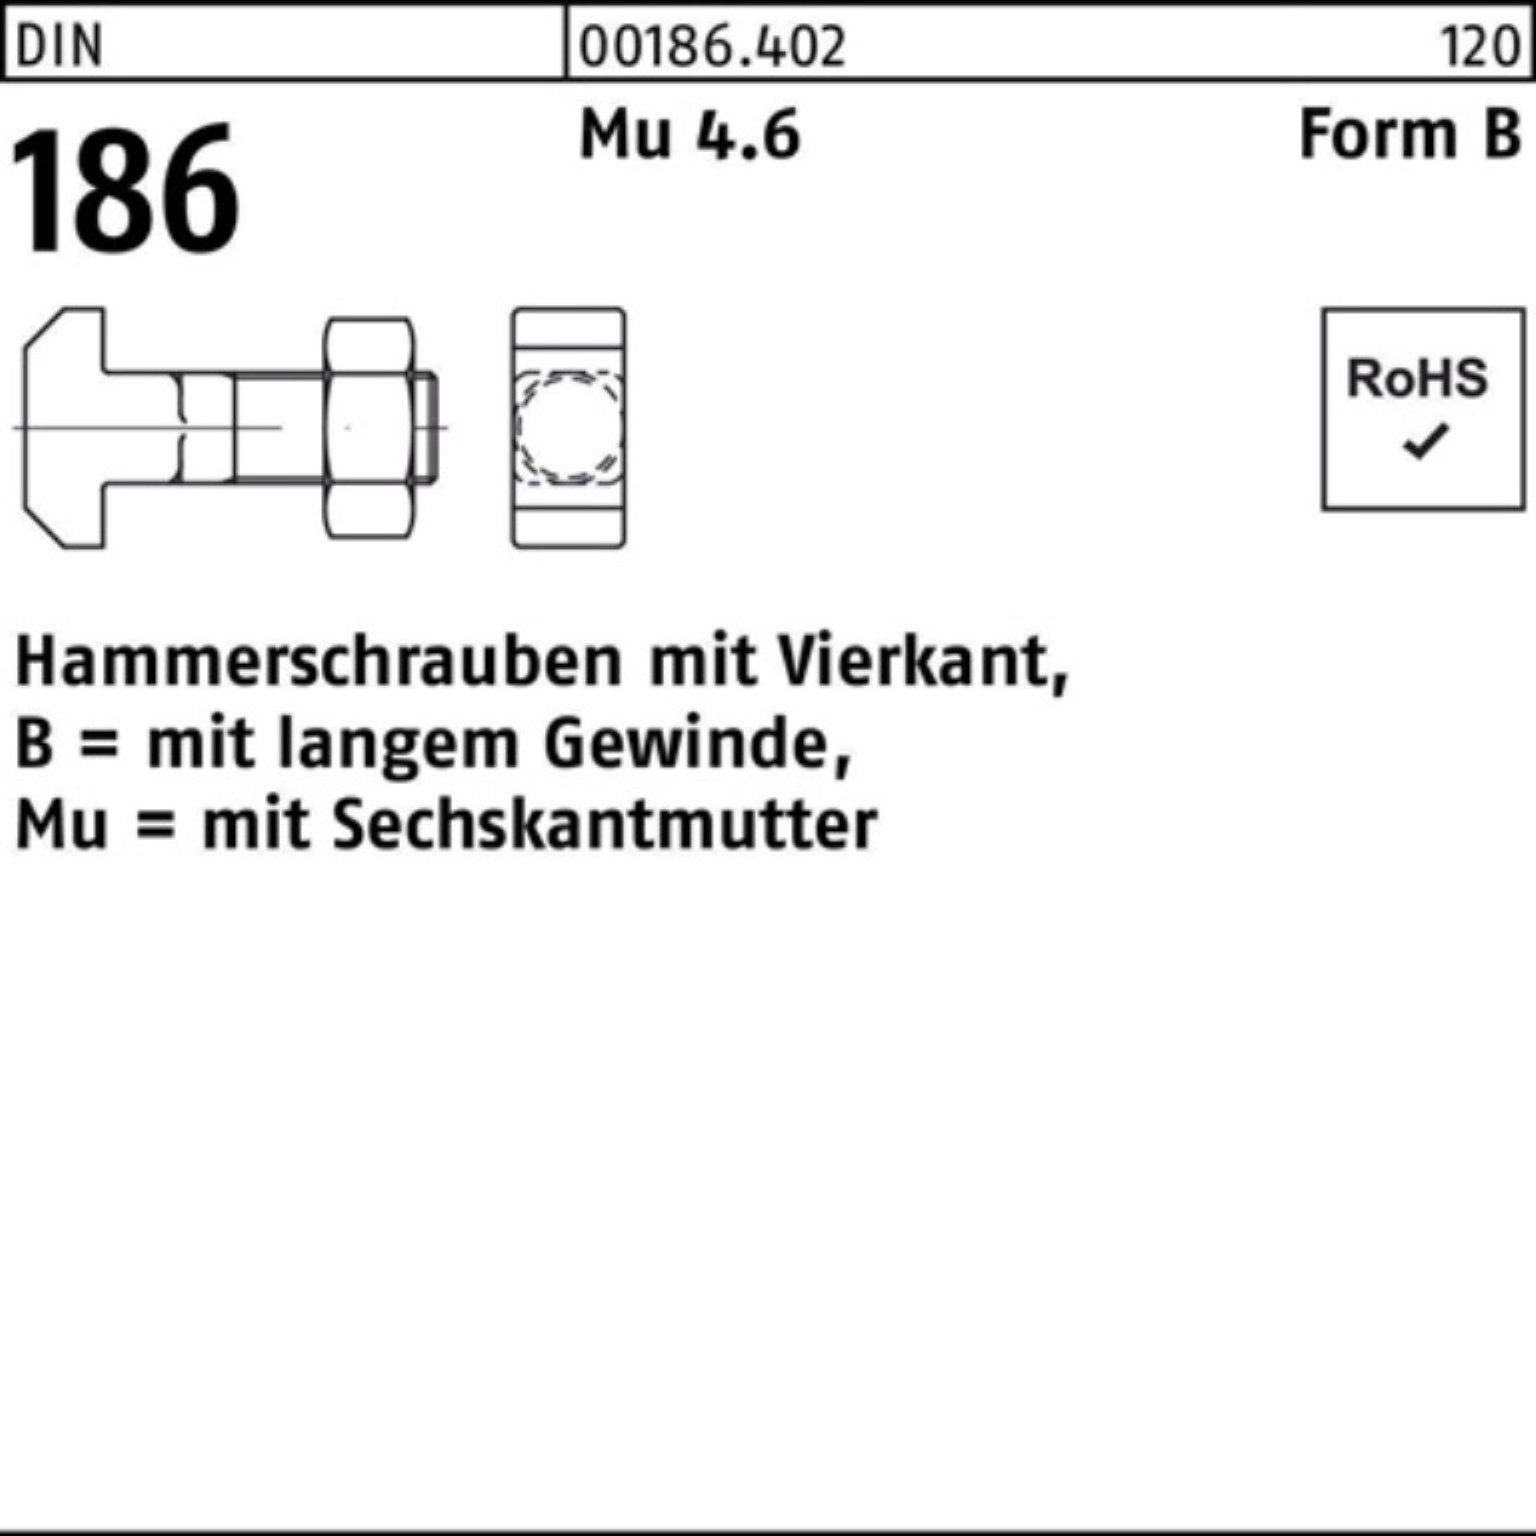 Reyher Schraube 100er Pack Hammerschraube 186 30 BM FormB DIN 6-ktmutter 10x Vierkant